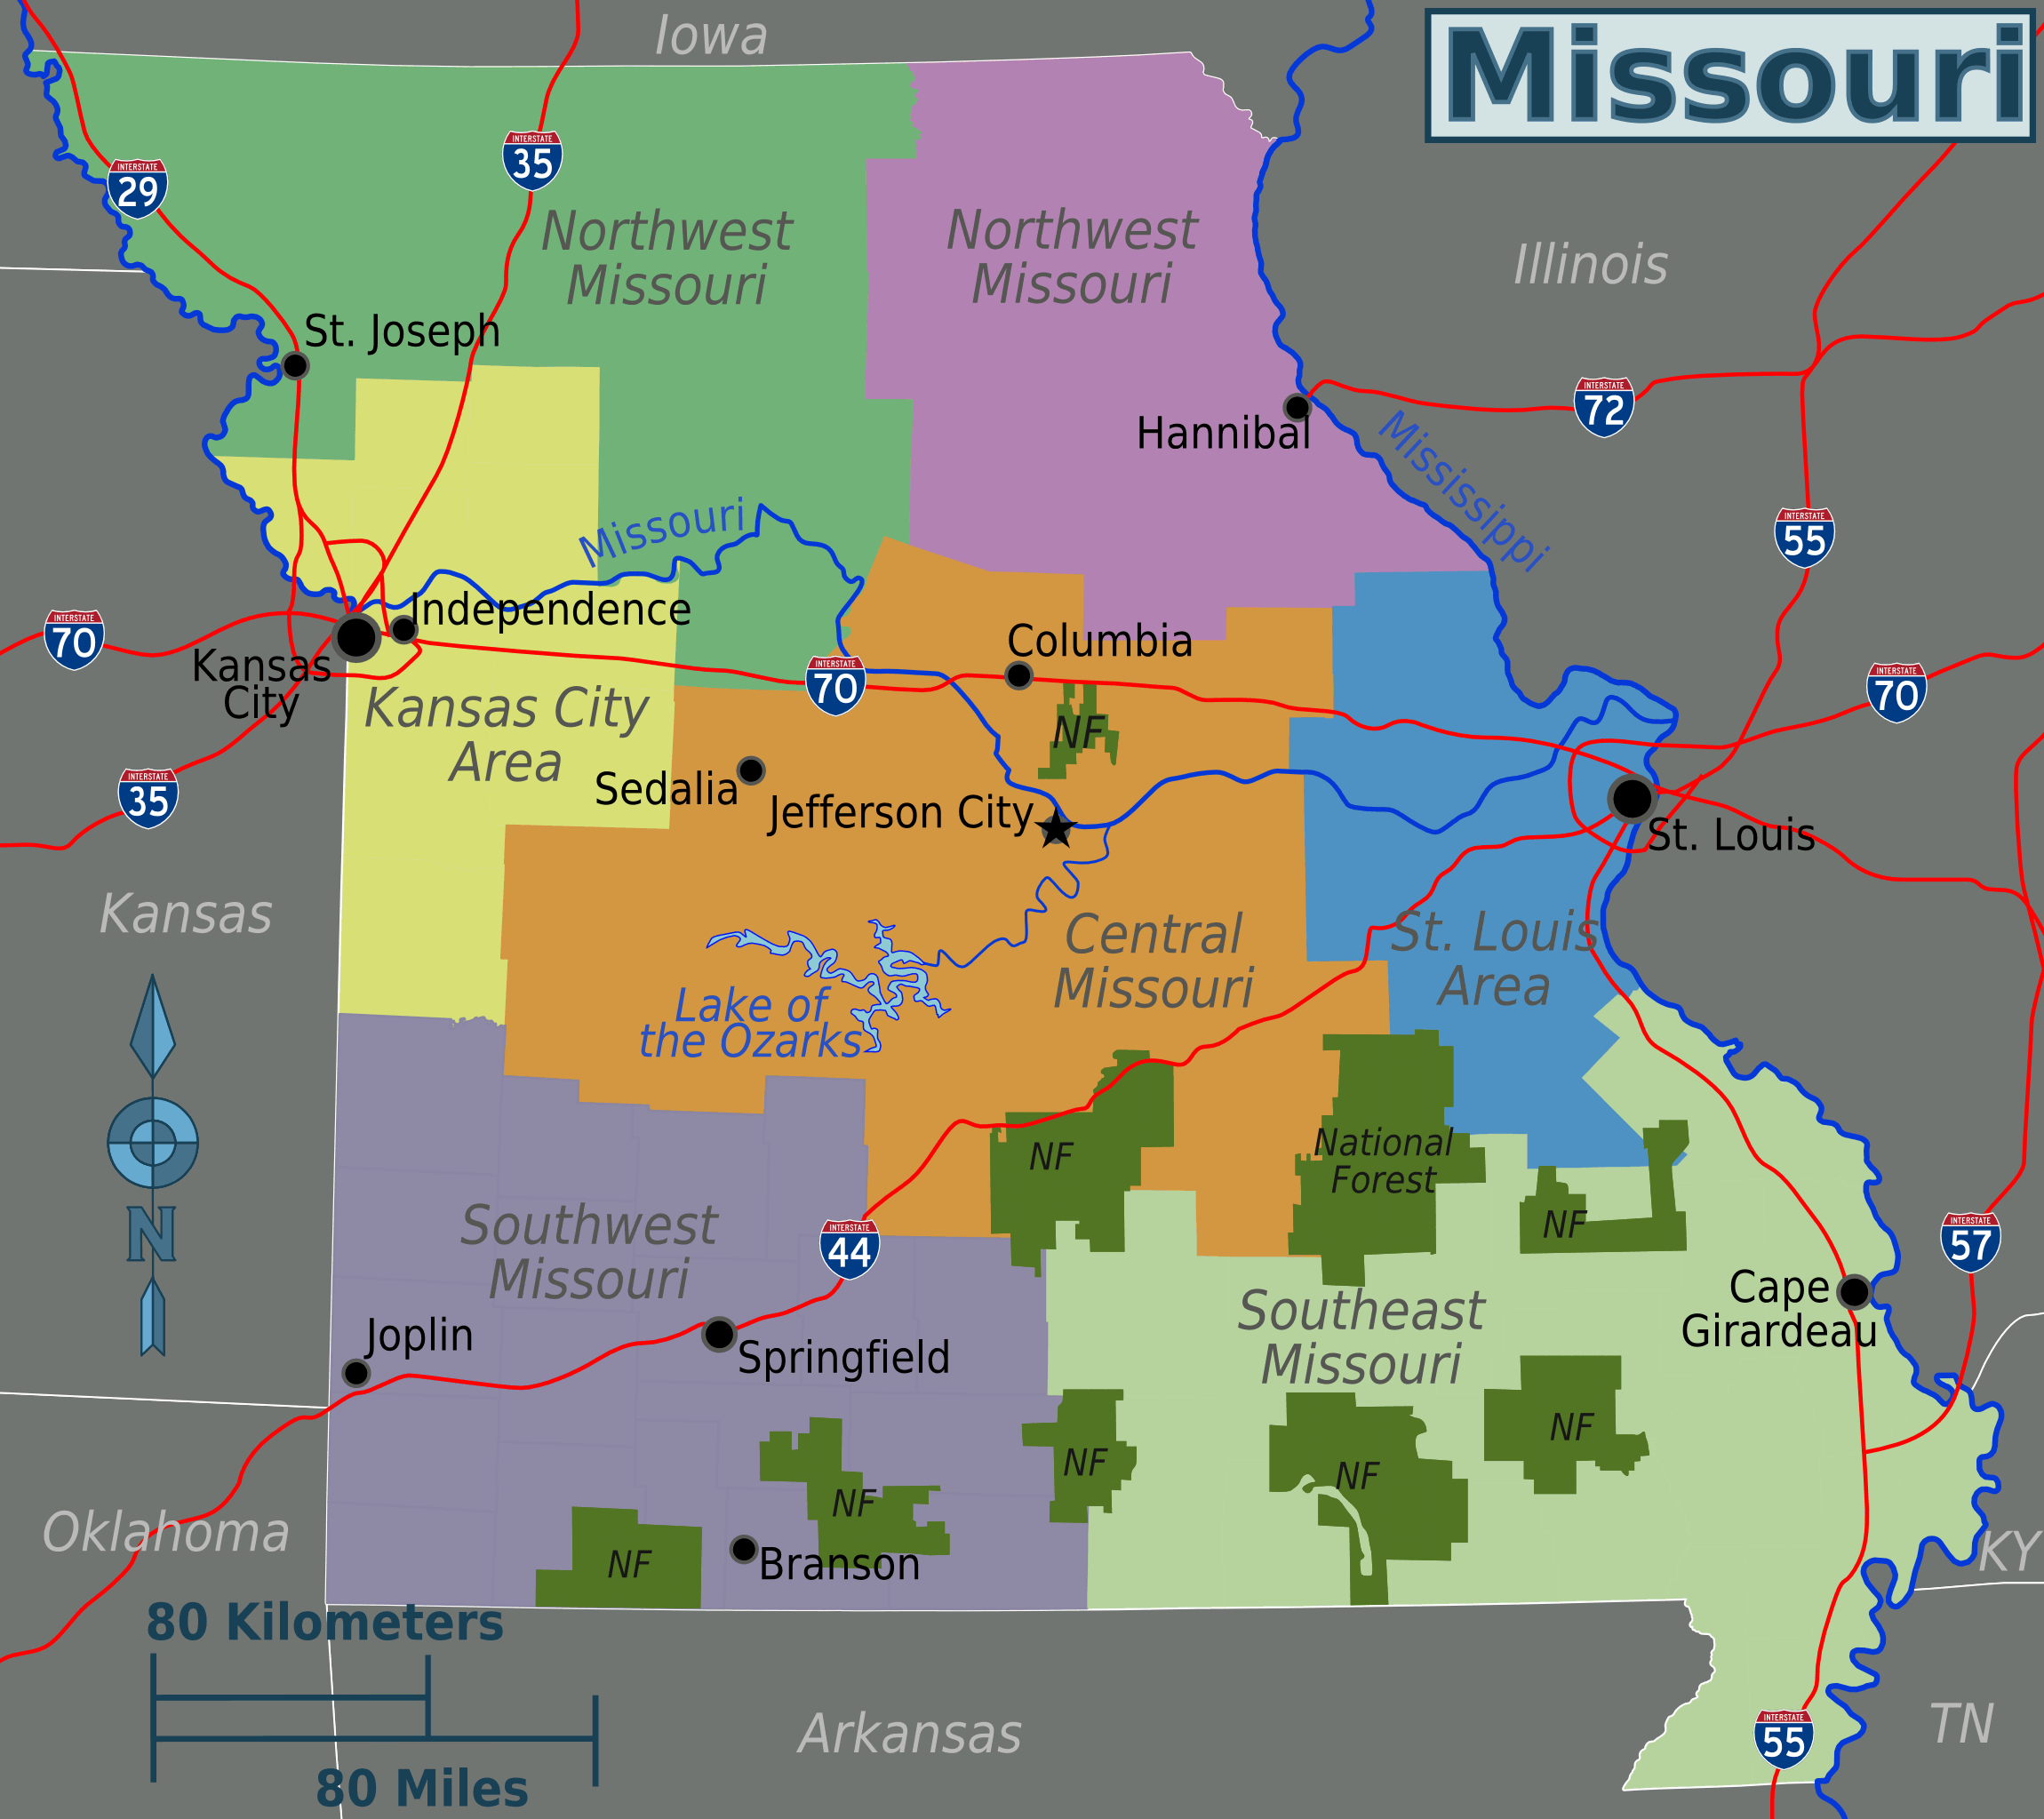 Missouri_bolgeler_harita.png